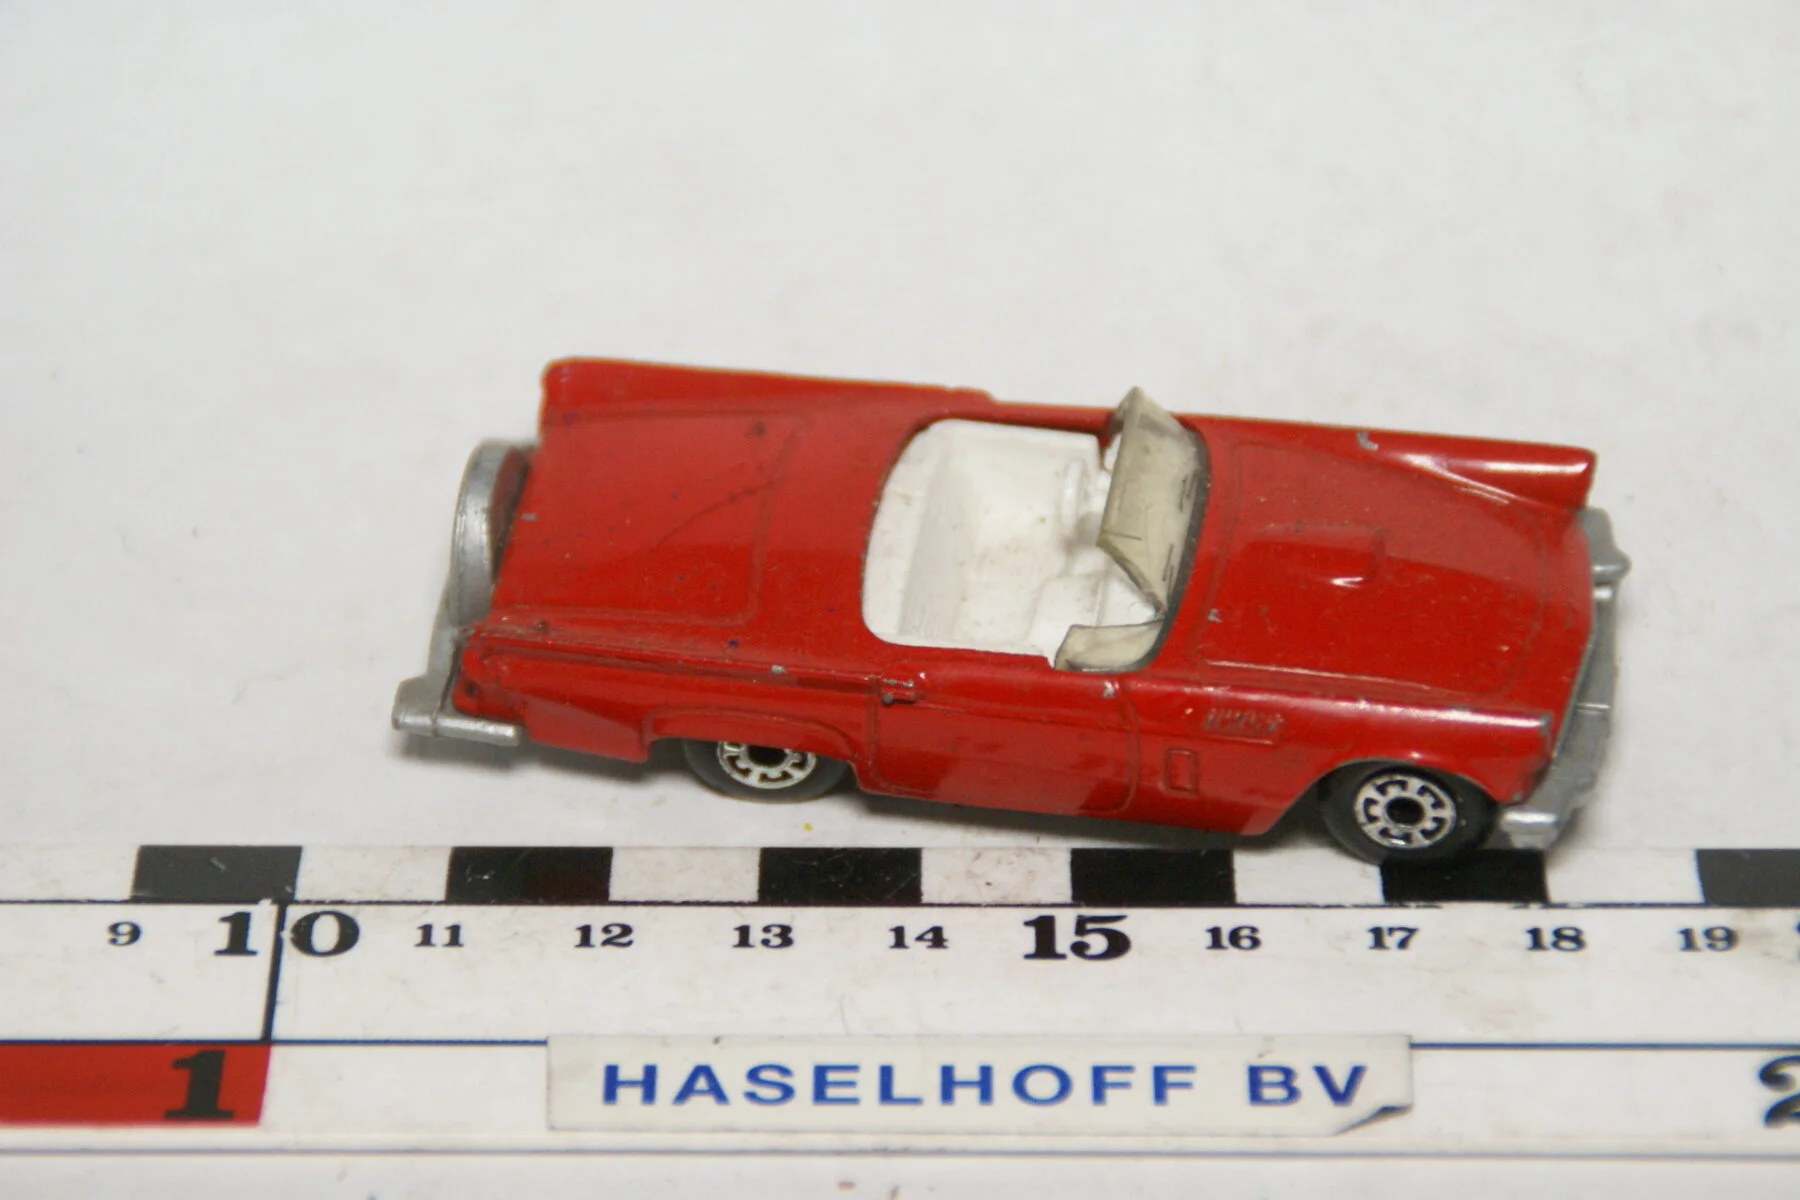 DSC07606 miniatuur 1957 Ford Thunderbird rood 1op63 Matchbox